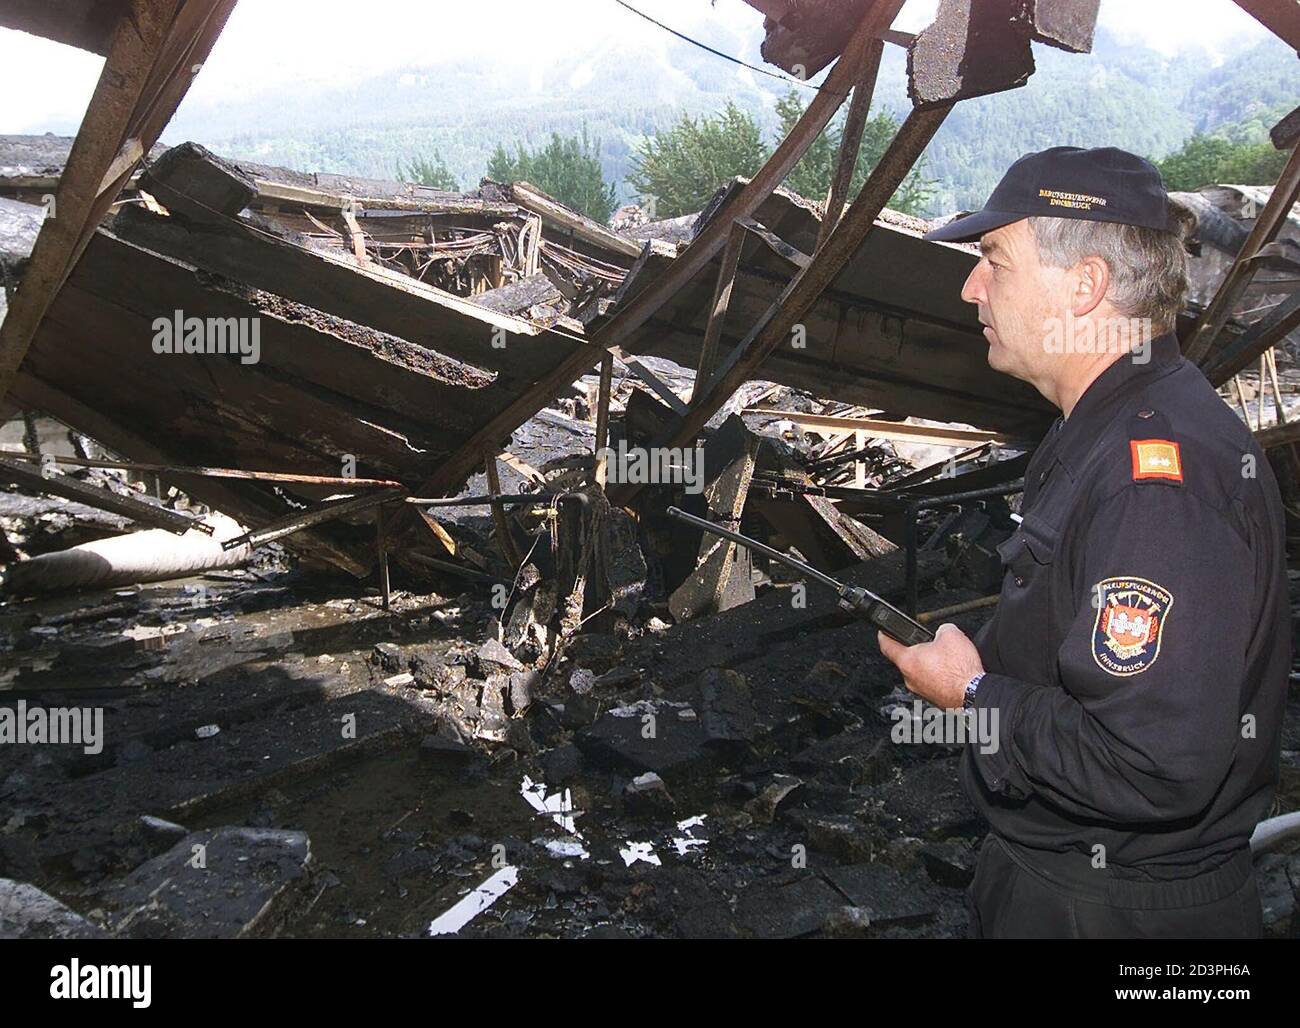 Ein Brand hat in der Nacht zum 4. Mai 2001 die Tiroler Lodenfabrik in Innsbruck vollkommen zerstoert. 300 Feuerwehrleute waren im Einsatz, die Brandursache ist bis dato noch nicht geklaert. Bereits 1999 war die gesamte Kollektion verbrannt.  PR/ Stock Photo